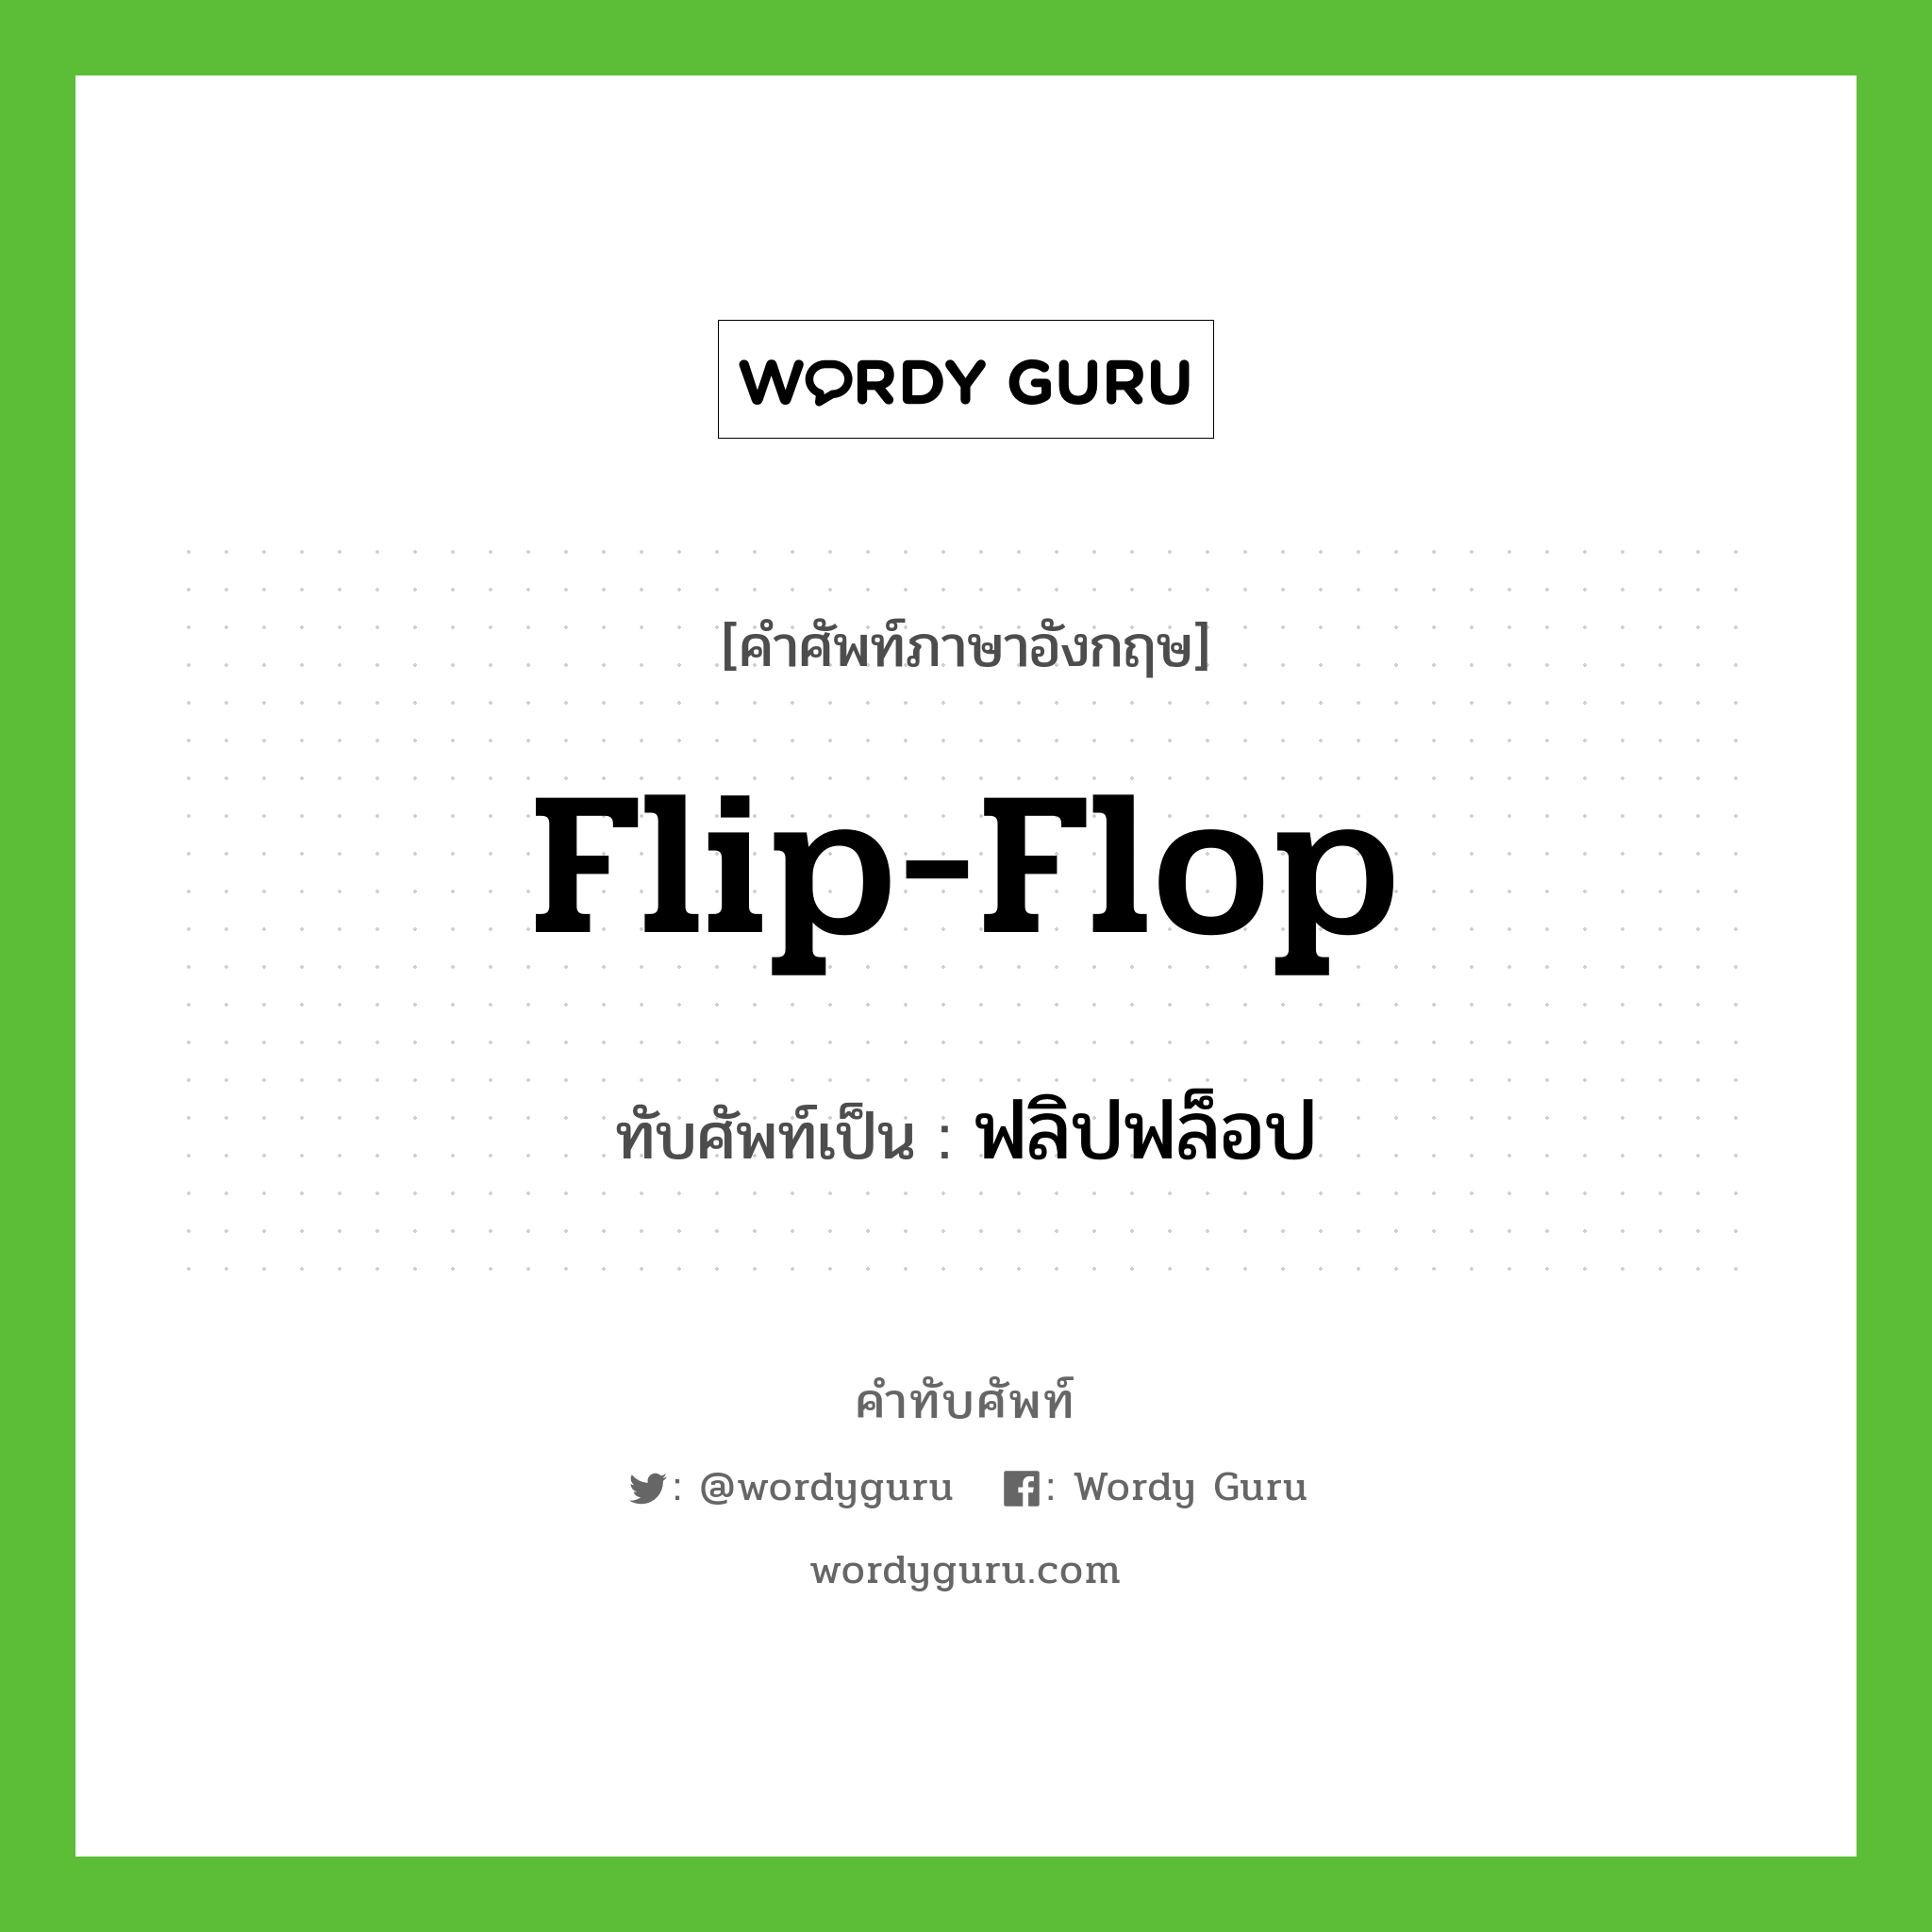 ฟลิปฟล็อป เขียนอย่างไร?, คำศัพท์ภาษาอังกฤษ ฟลิปฟล็อป ทับศัพท์เป็น flip-flop